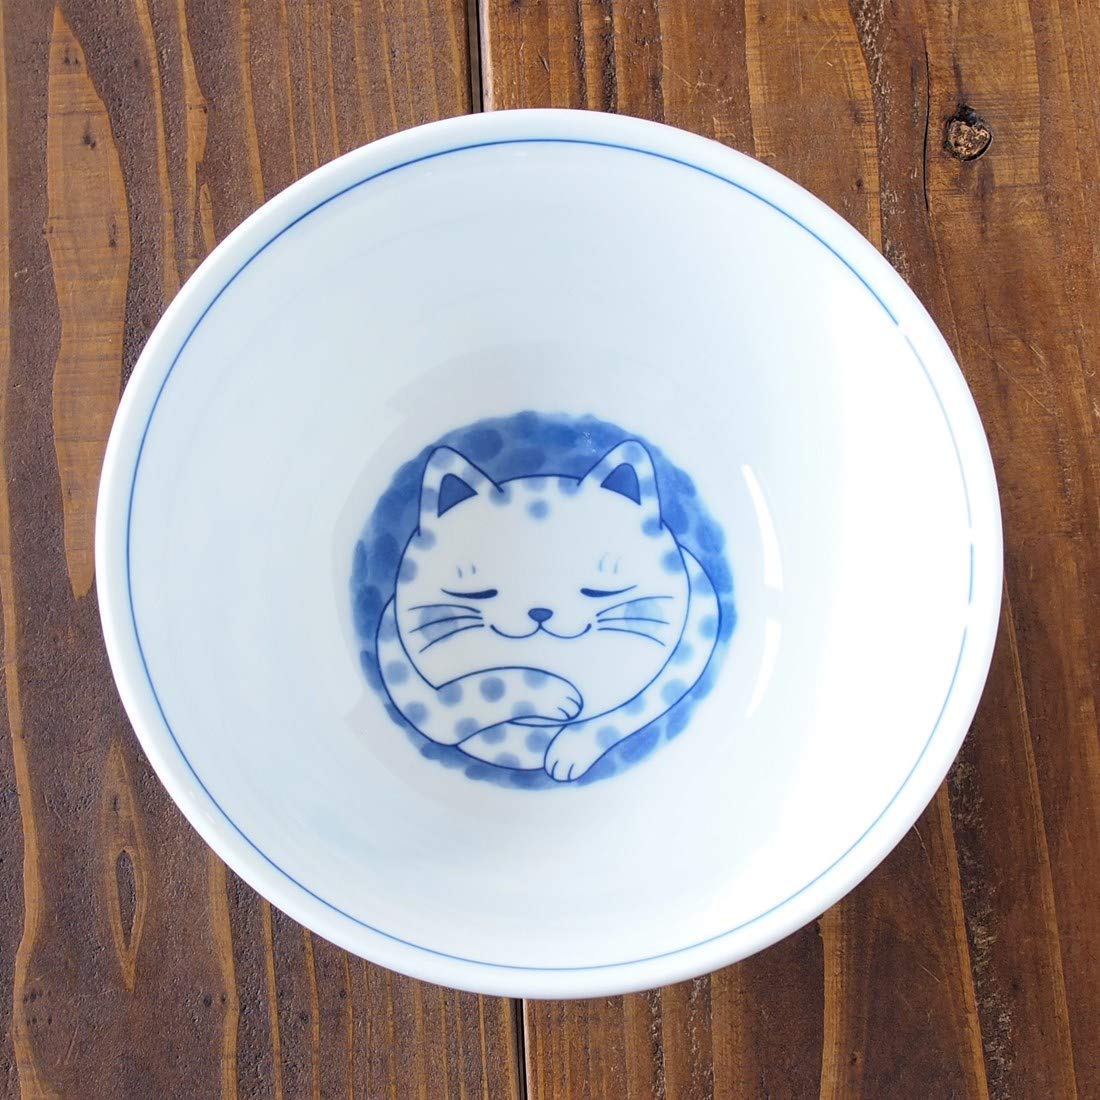 Japanese Cute Cat design 7.48 Inches Soup Ramen Noodle or Serving Bowl Buchi Bicolor